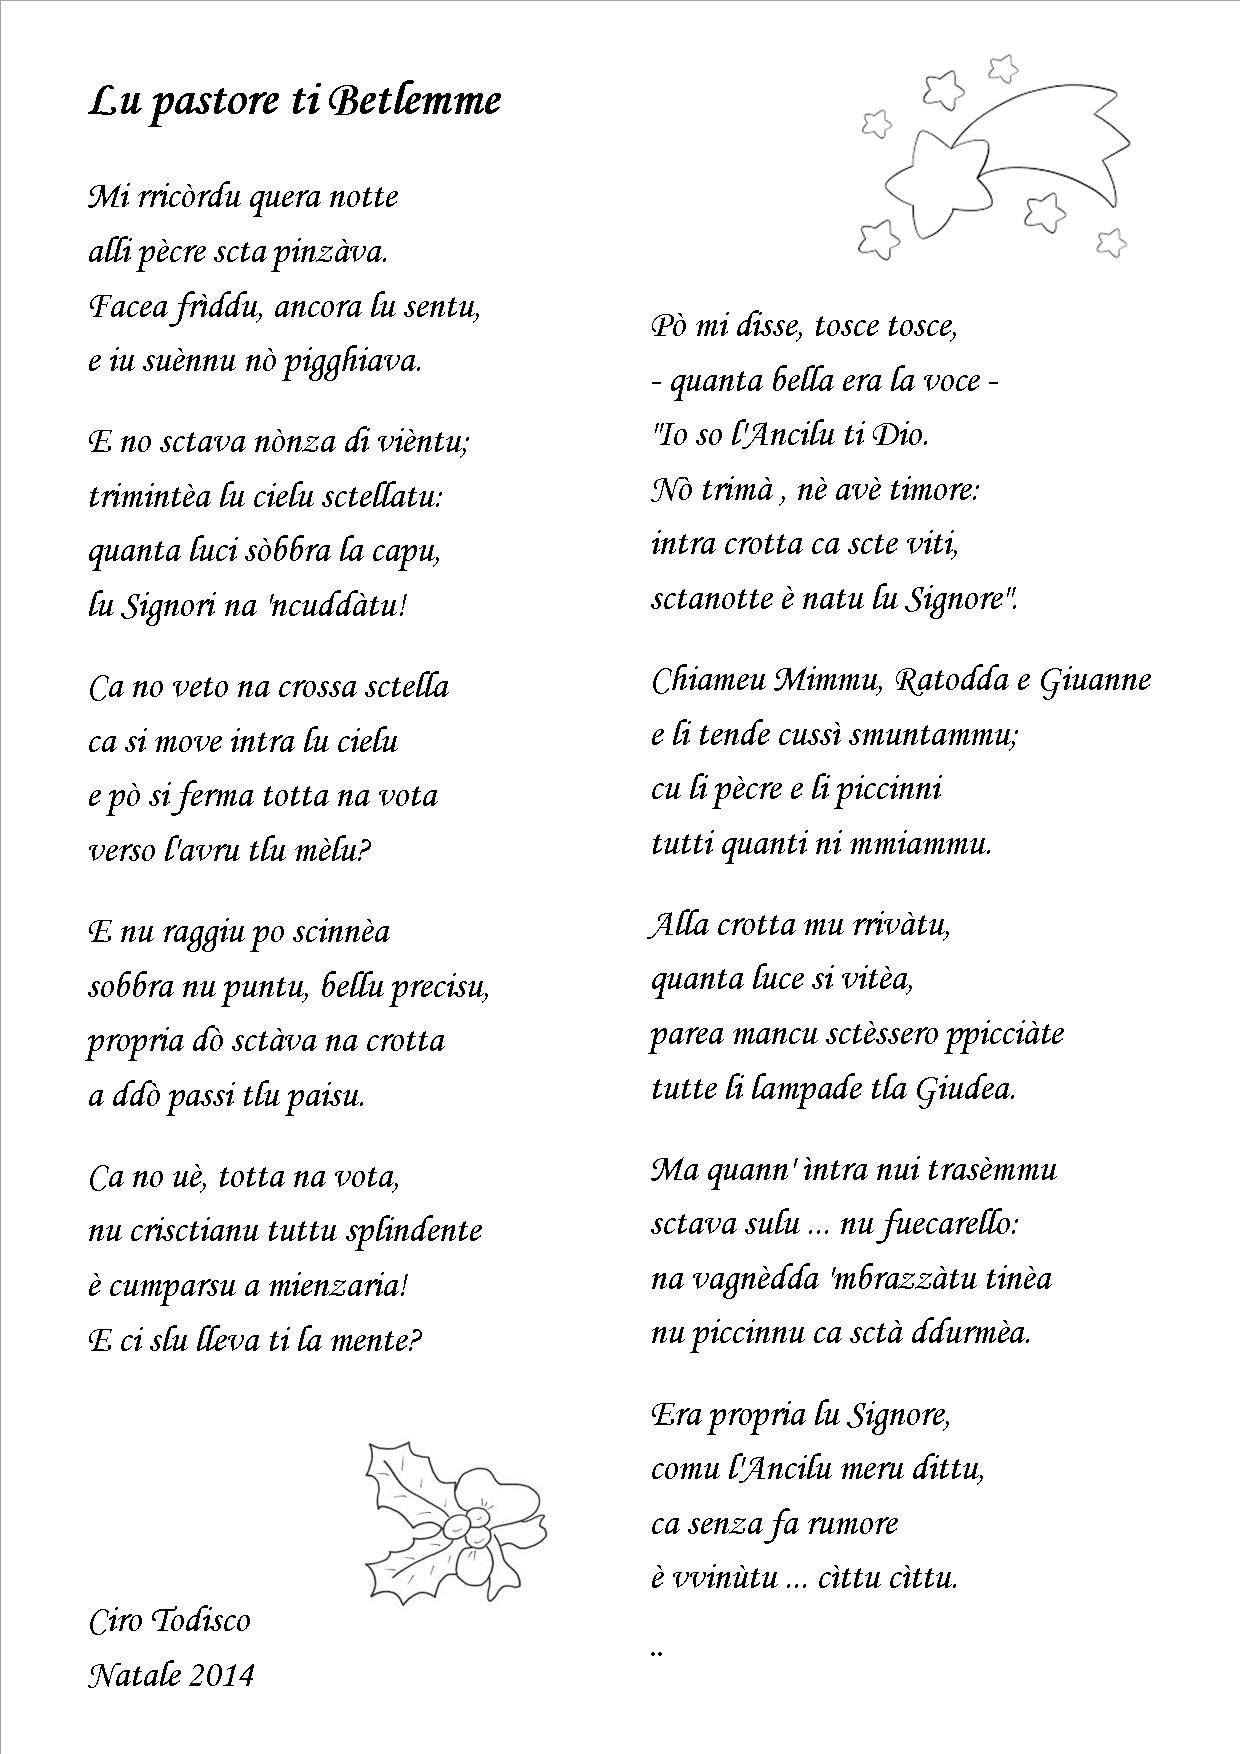 Poesie Di Natale In Siciliano.Antologia Di Poesie Dialettali Per Natale Grottagliesita Blog